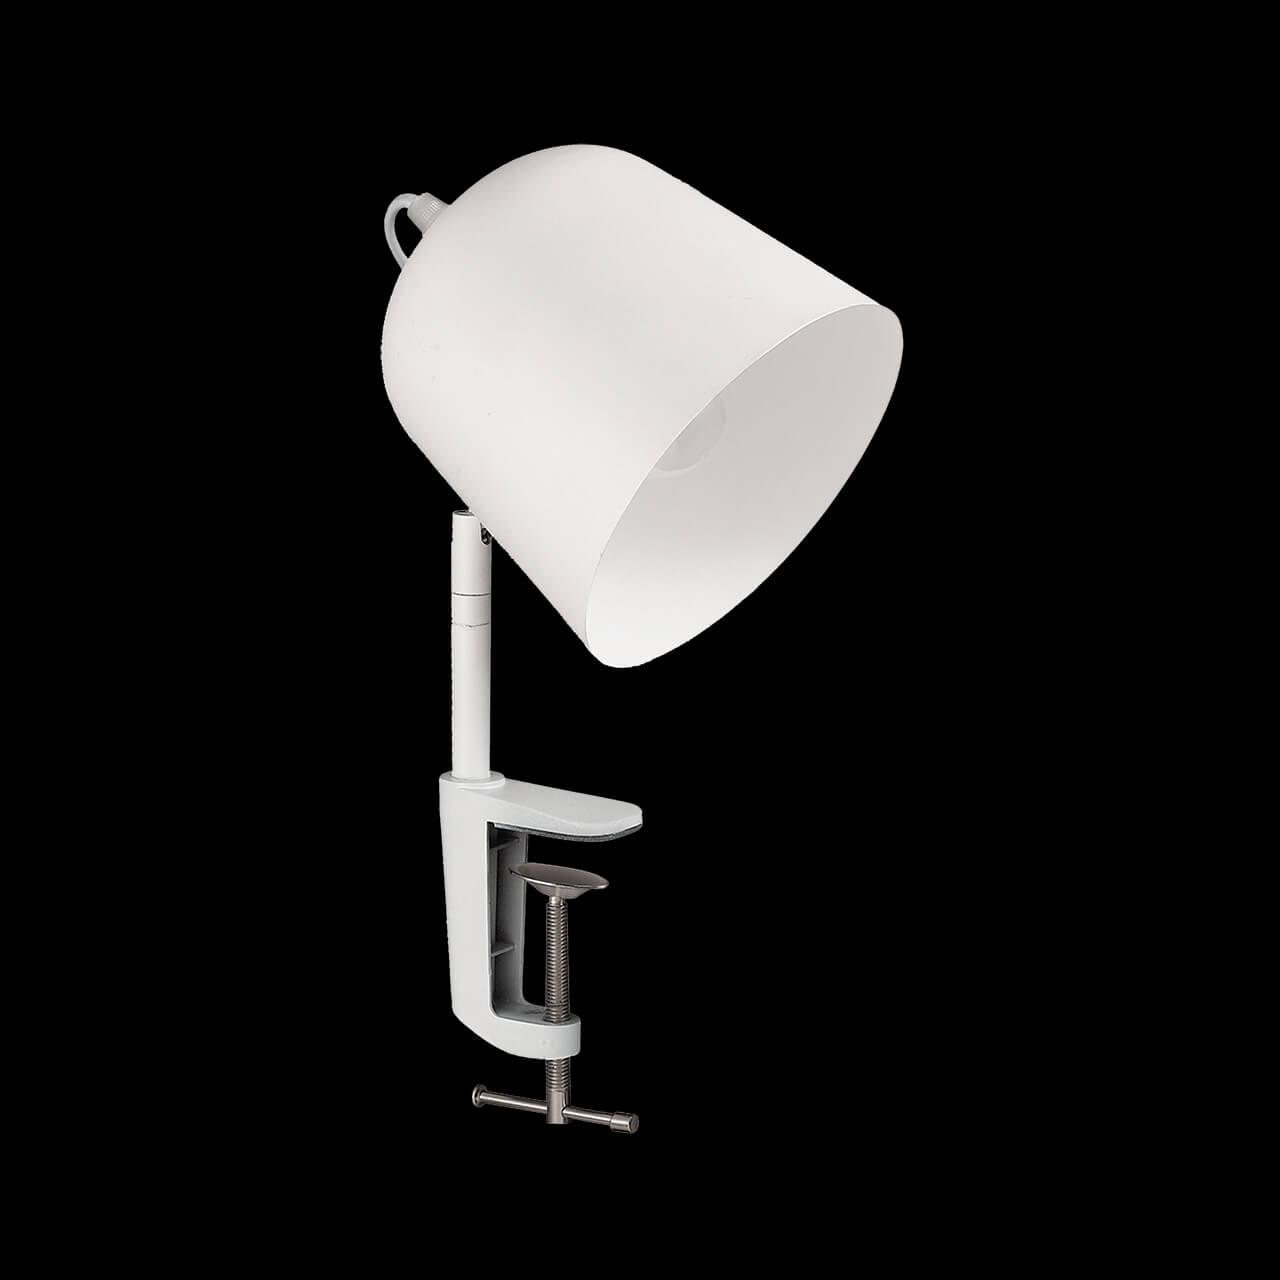 Настольная лампа Ideal Lux Limbo AP1 Bianco 180212